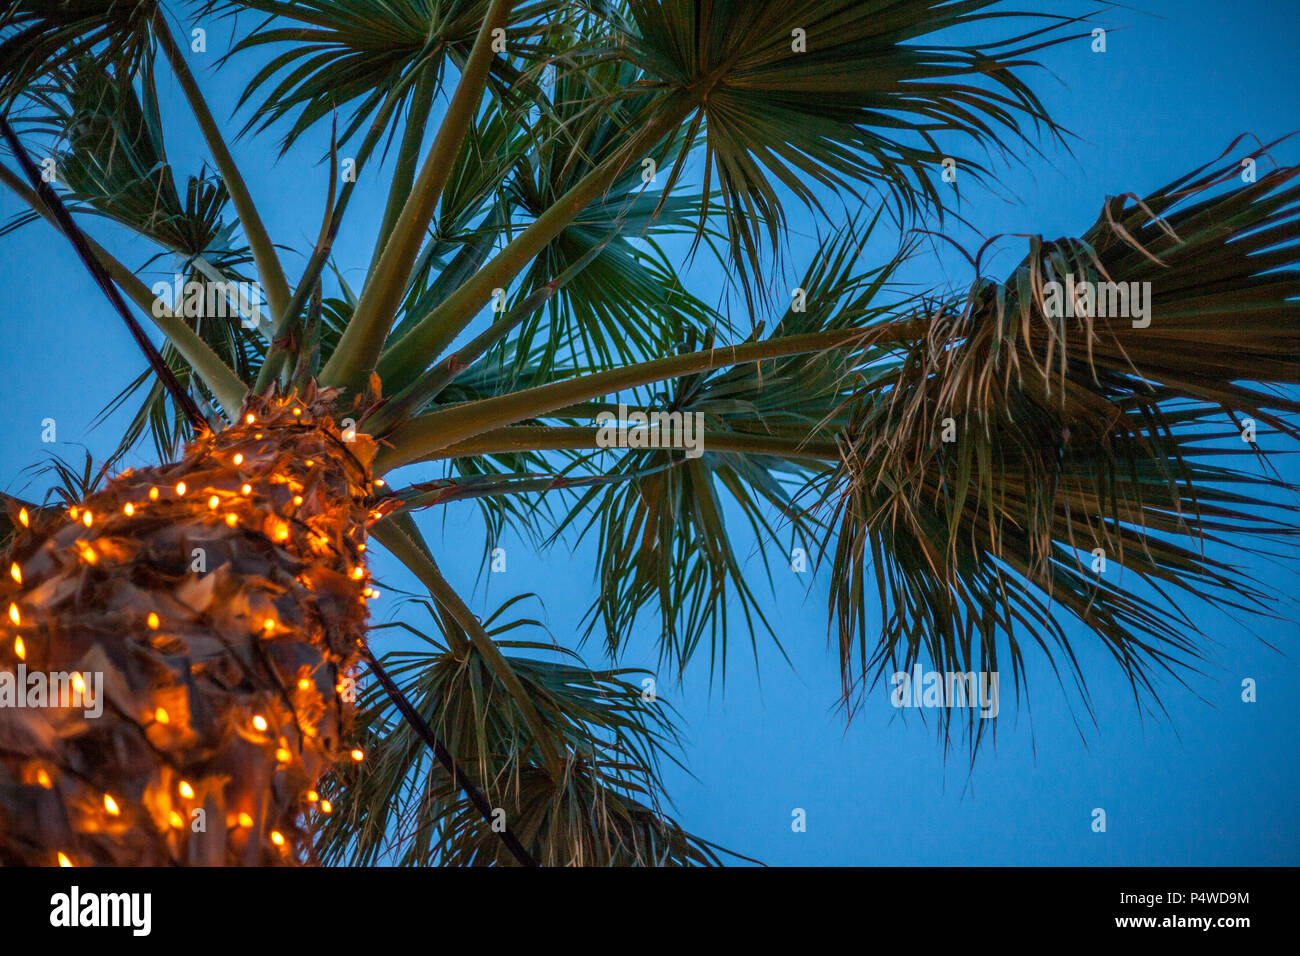 Eine große Palme unter dem Himmel. Künstliche Beleuchtung glitzernden um  den Stamm. Ein elektrisches Kabel, die durch die Pflanze. Garten Design  Ideen Stockfotografie - Alamy